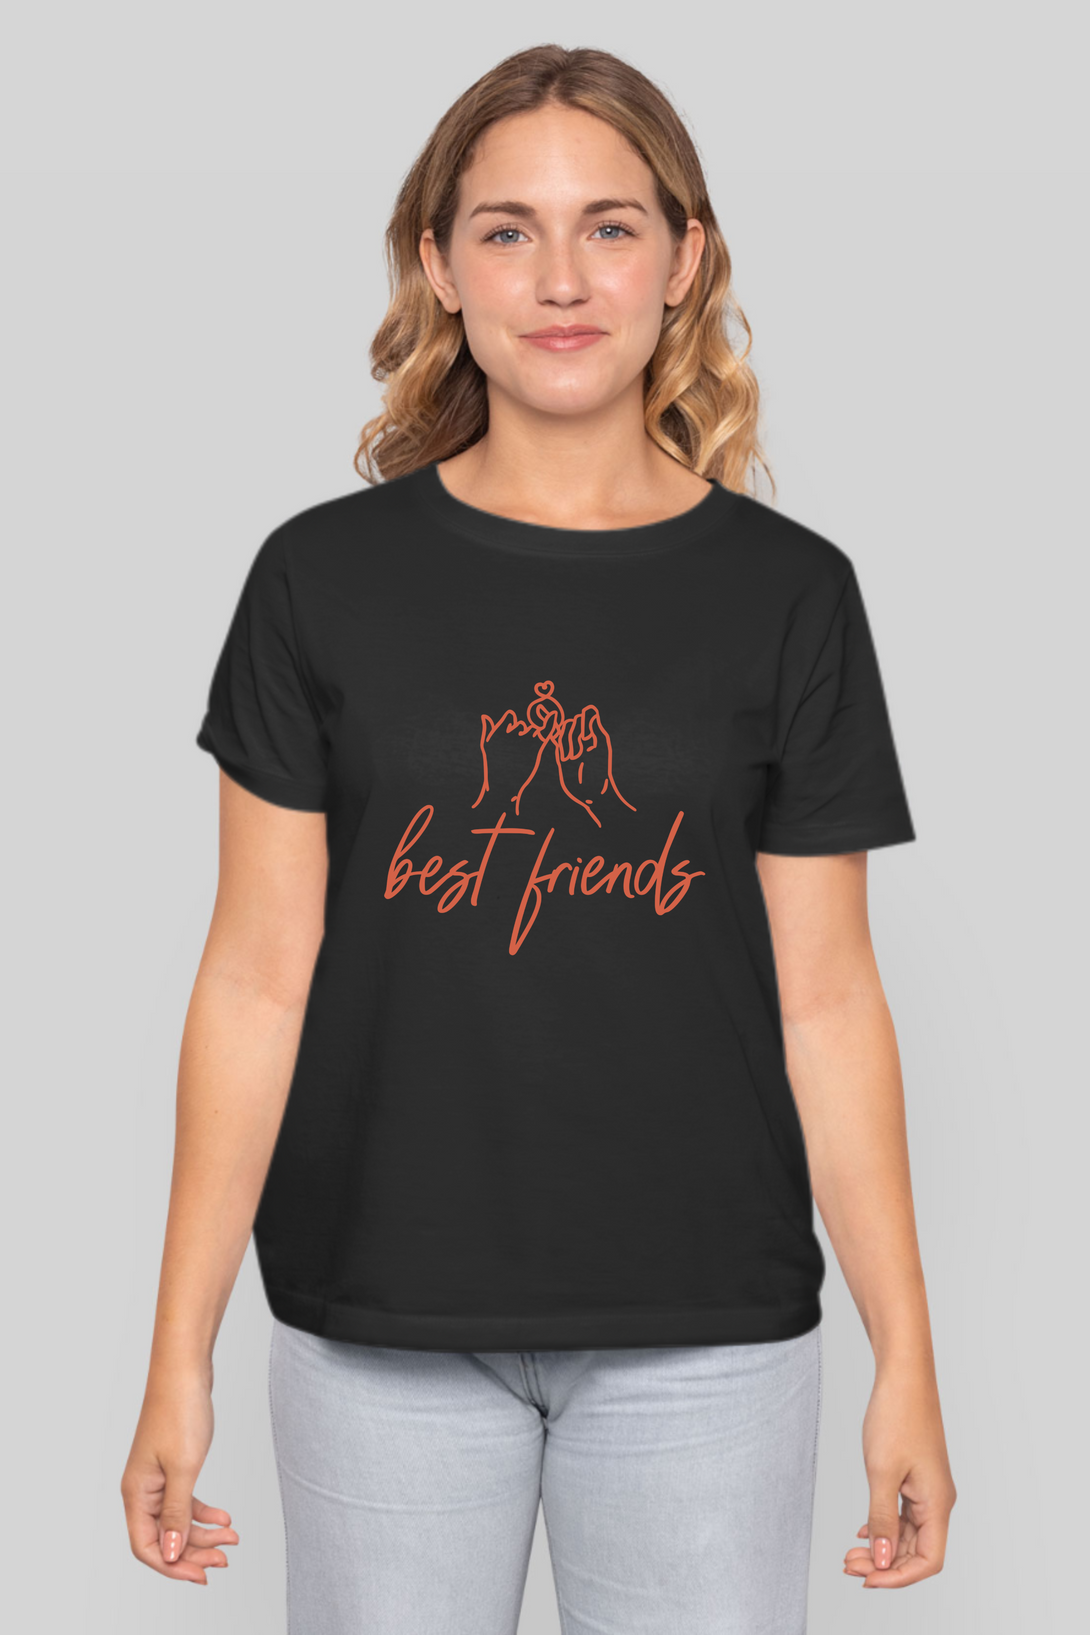 Best Friends Printed T-Shirt For Women - WowWaves - 10